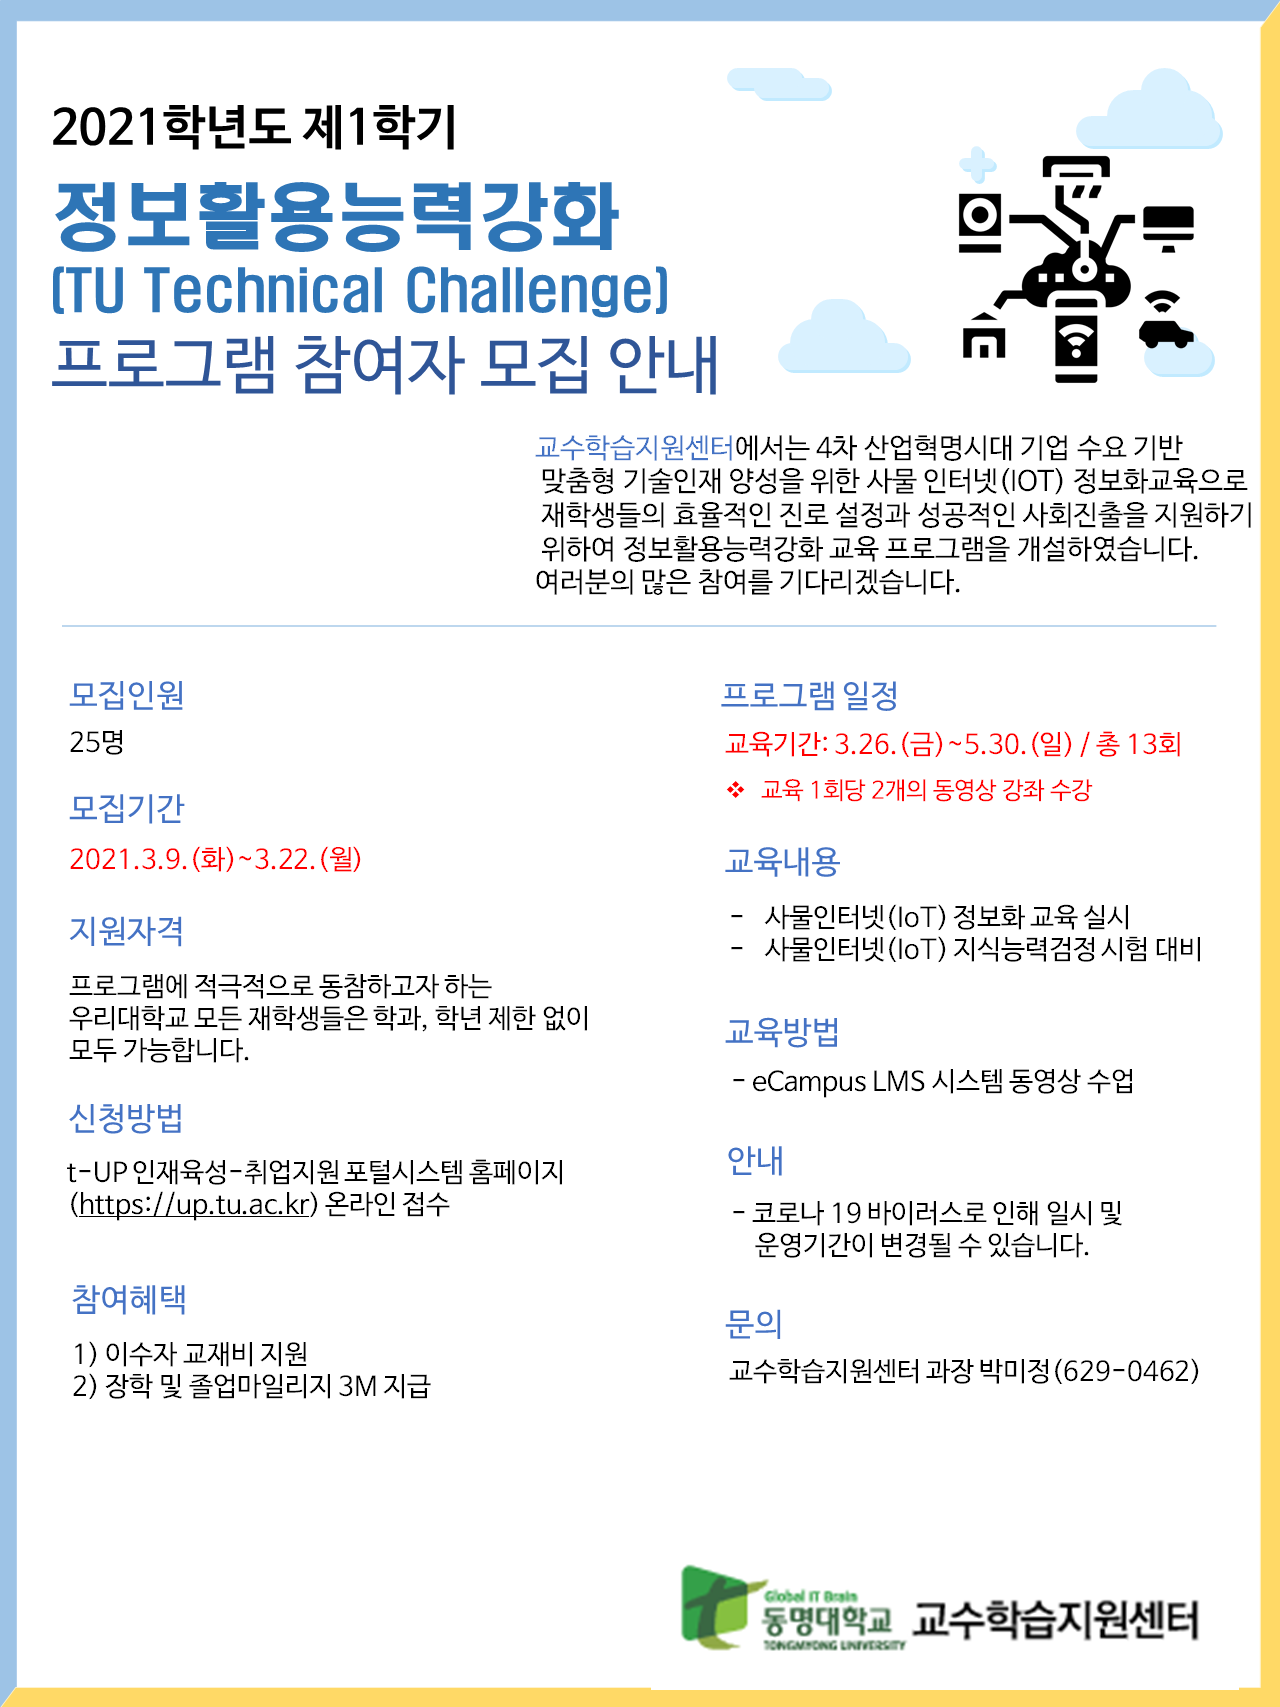 [대학혁신] 2021-1학기 Technical Challenge 홍보 포스터 PNG